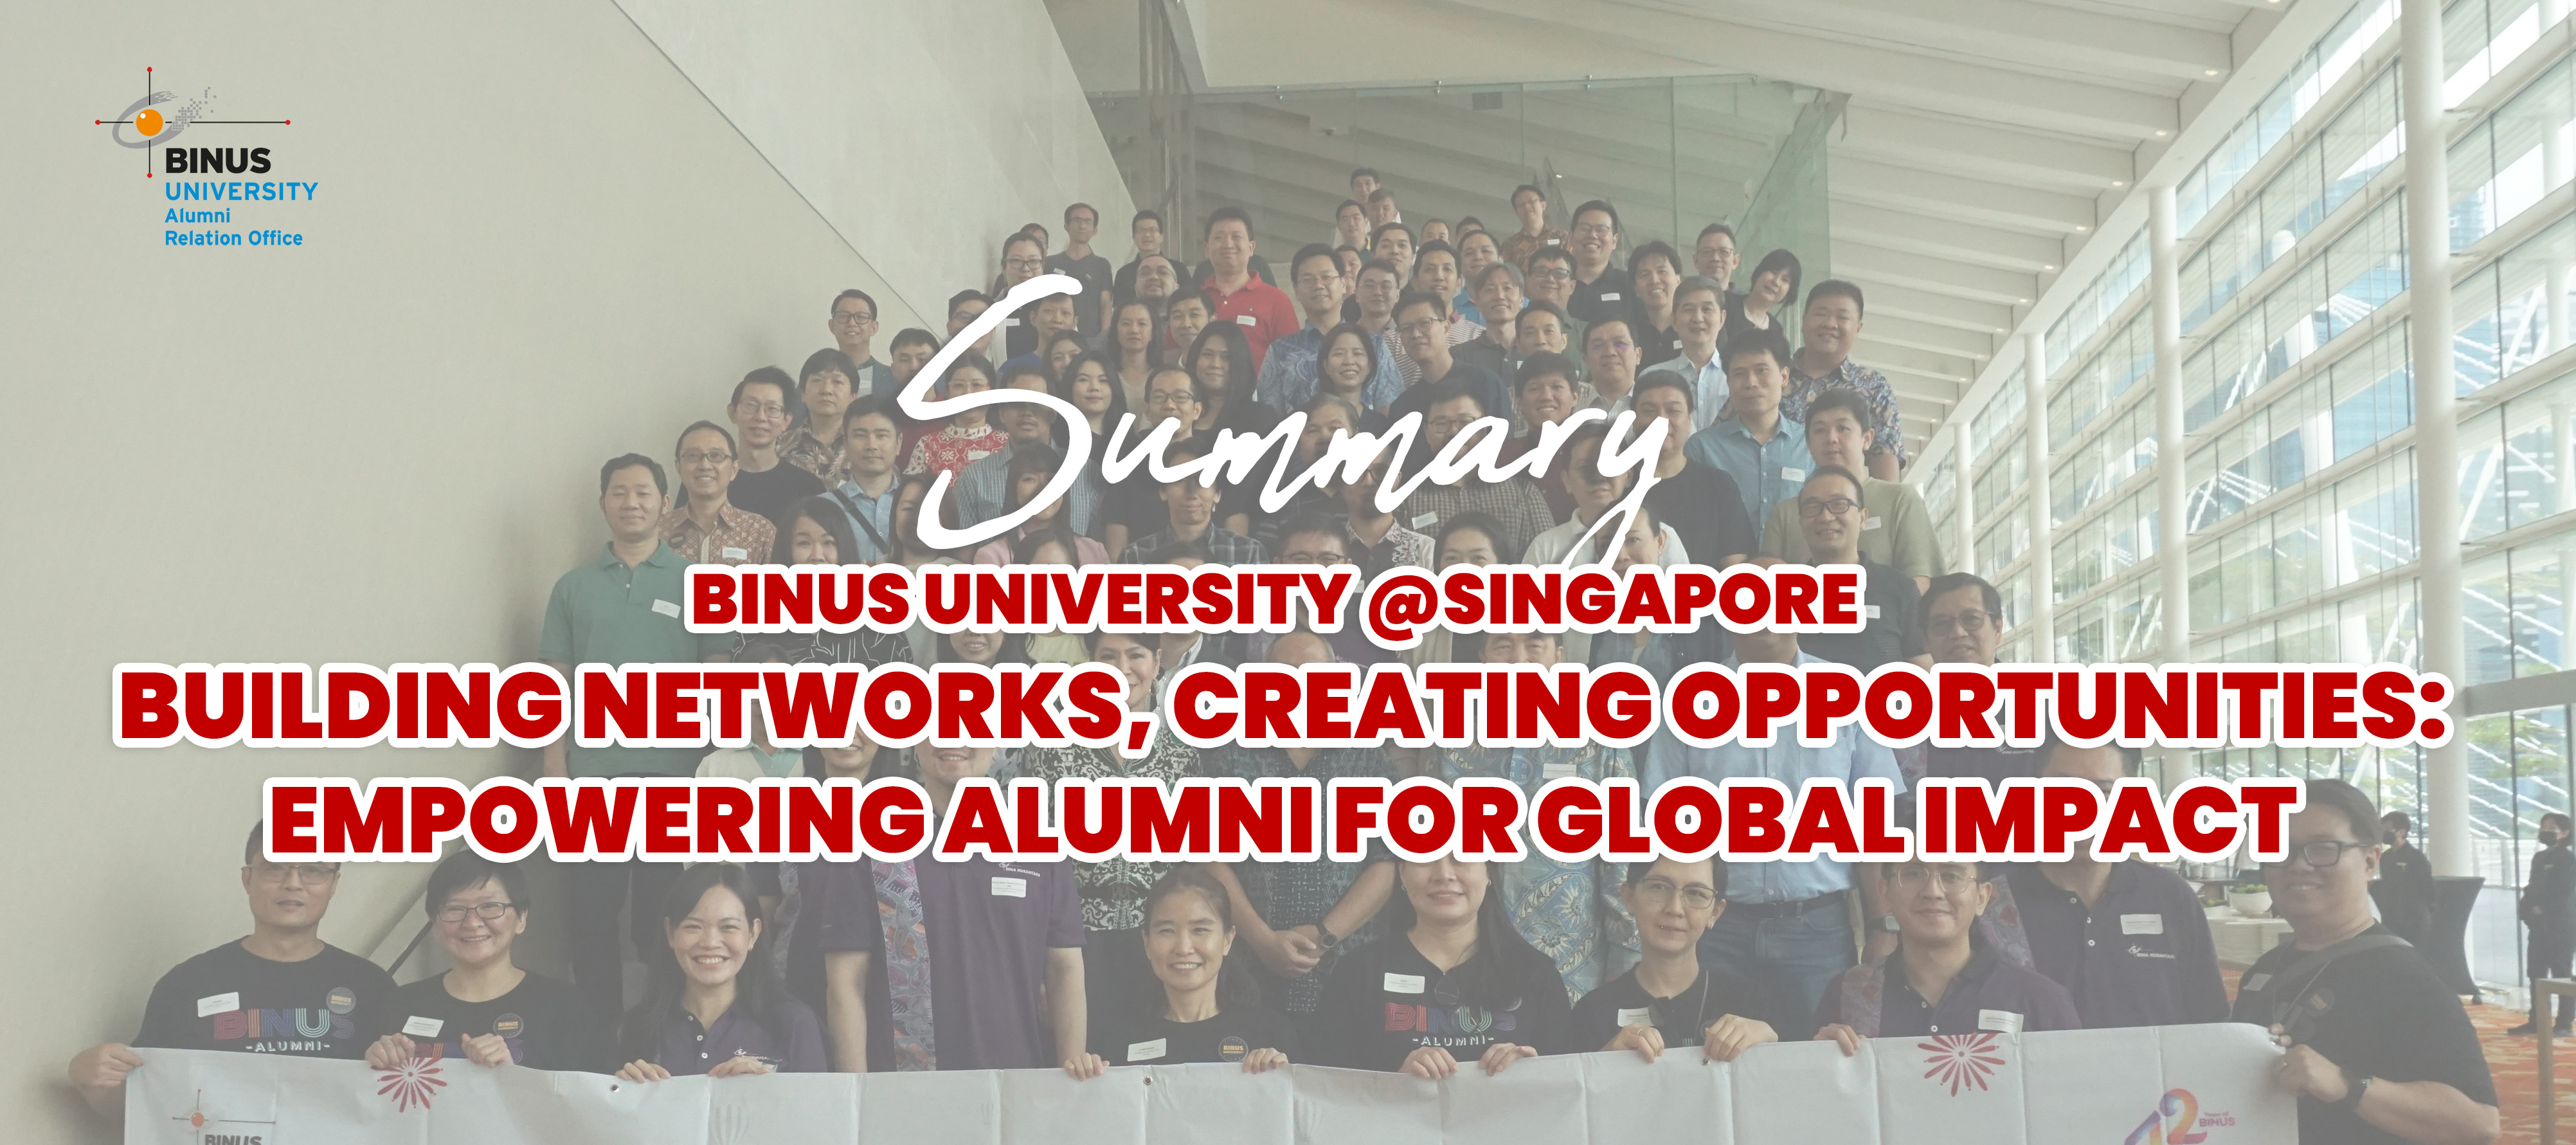 Summary acara BINUS University @Singapore  